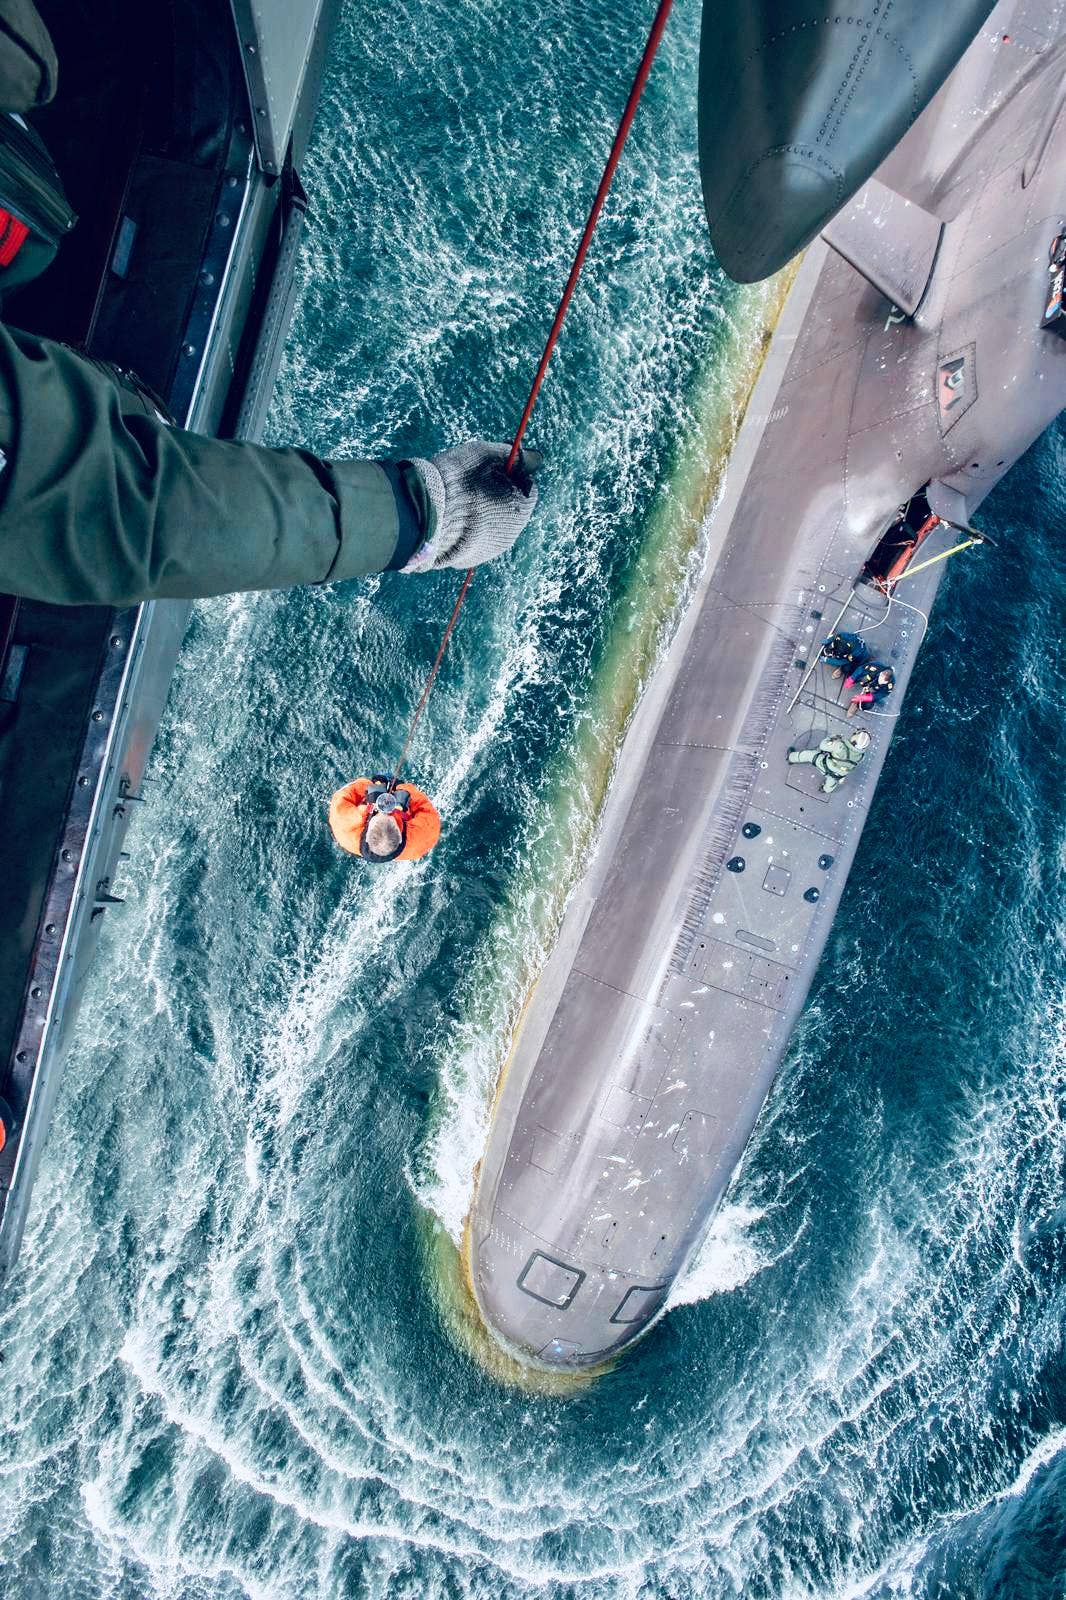 HOISTEX exercise with the <em>U-32</em> (S-182).<em> Photo by Markus Krone</em>